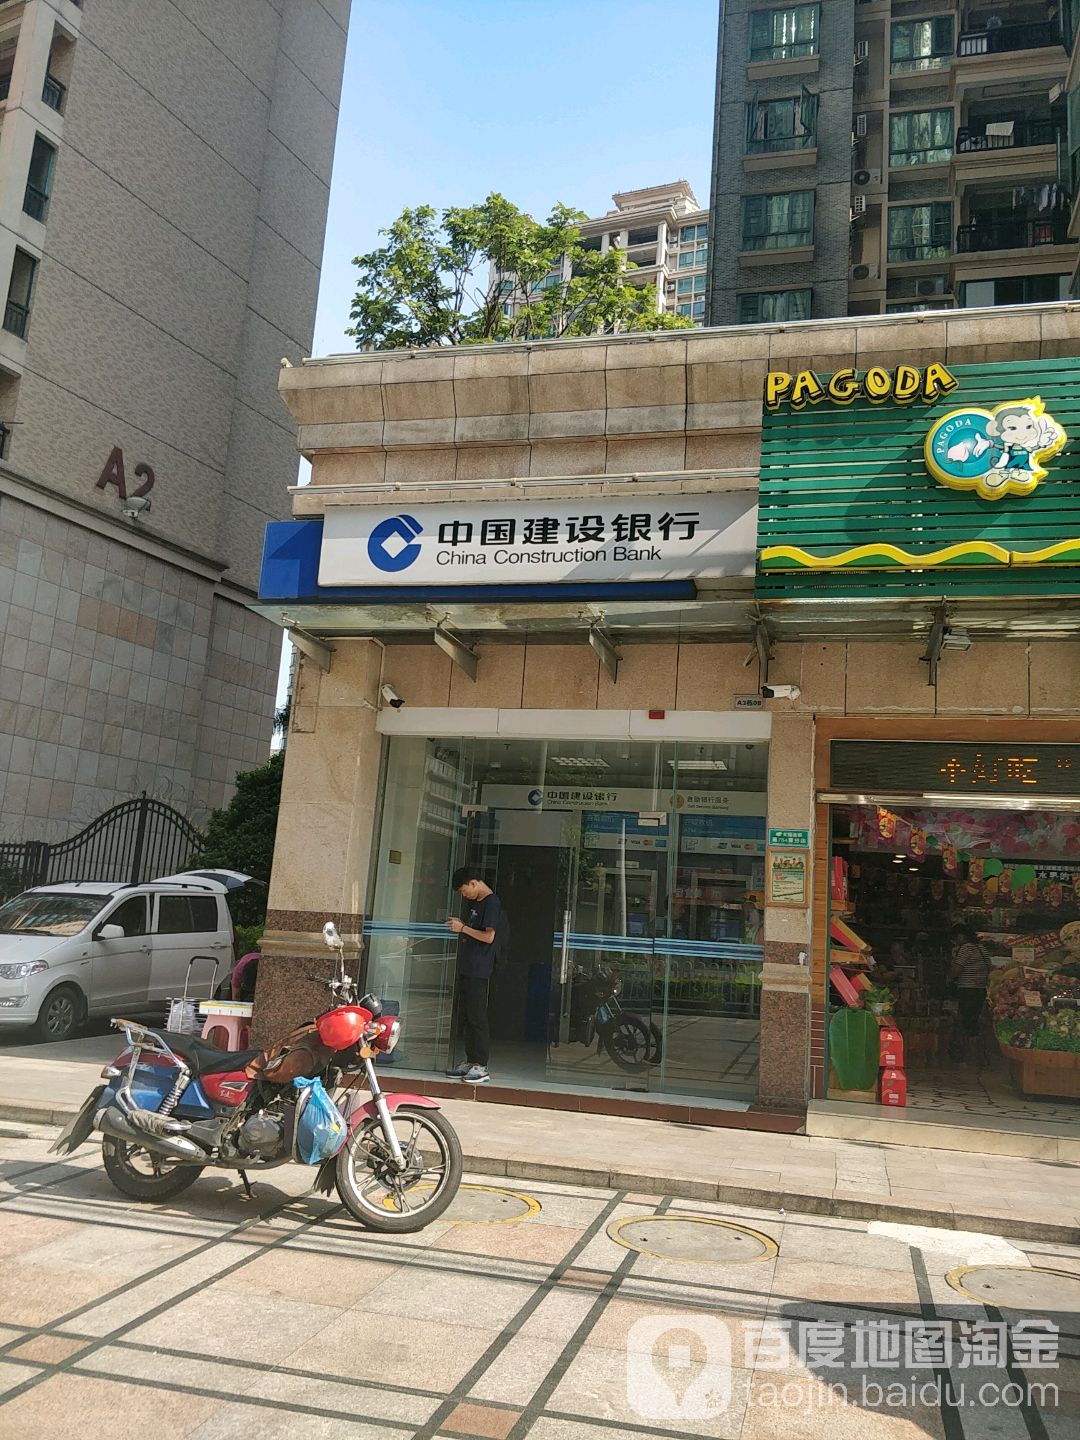 中國建設銀行24小時自助銀行服務(沿江路)